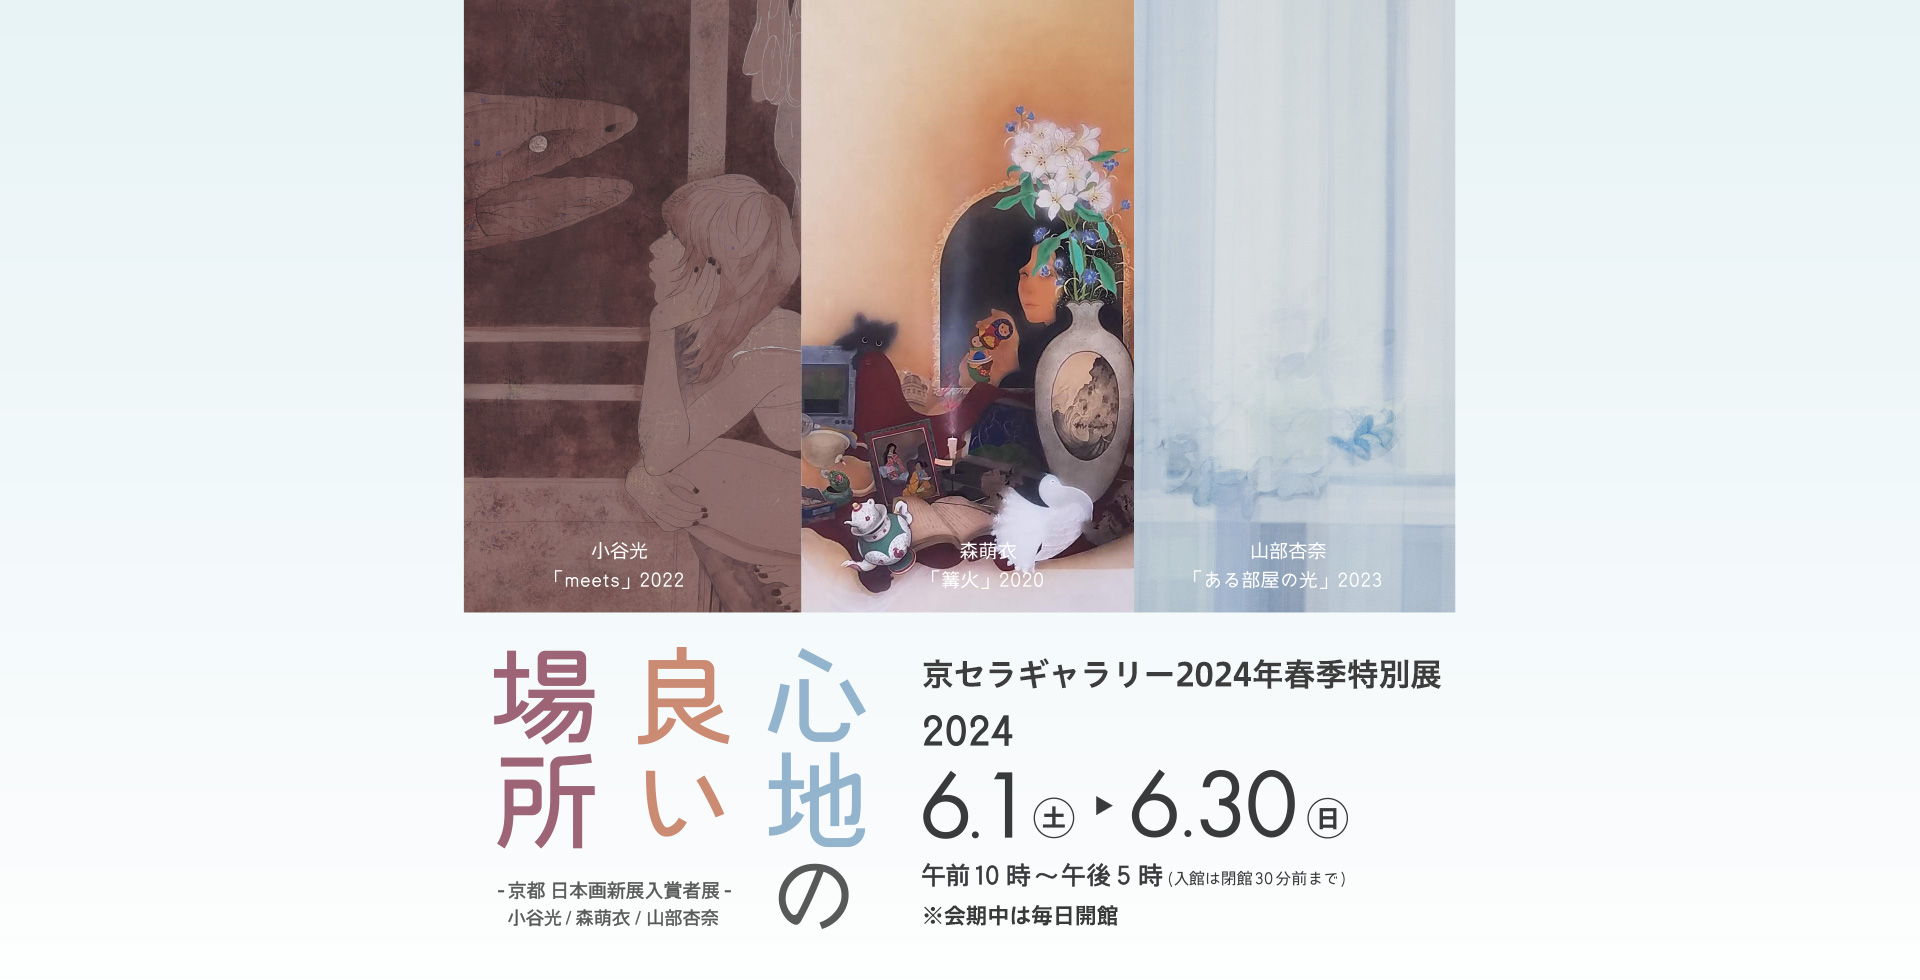 京セラギャラリー2024年春期特別展『心地の良い場所』